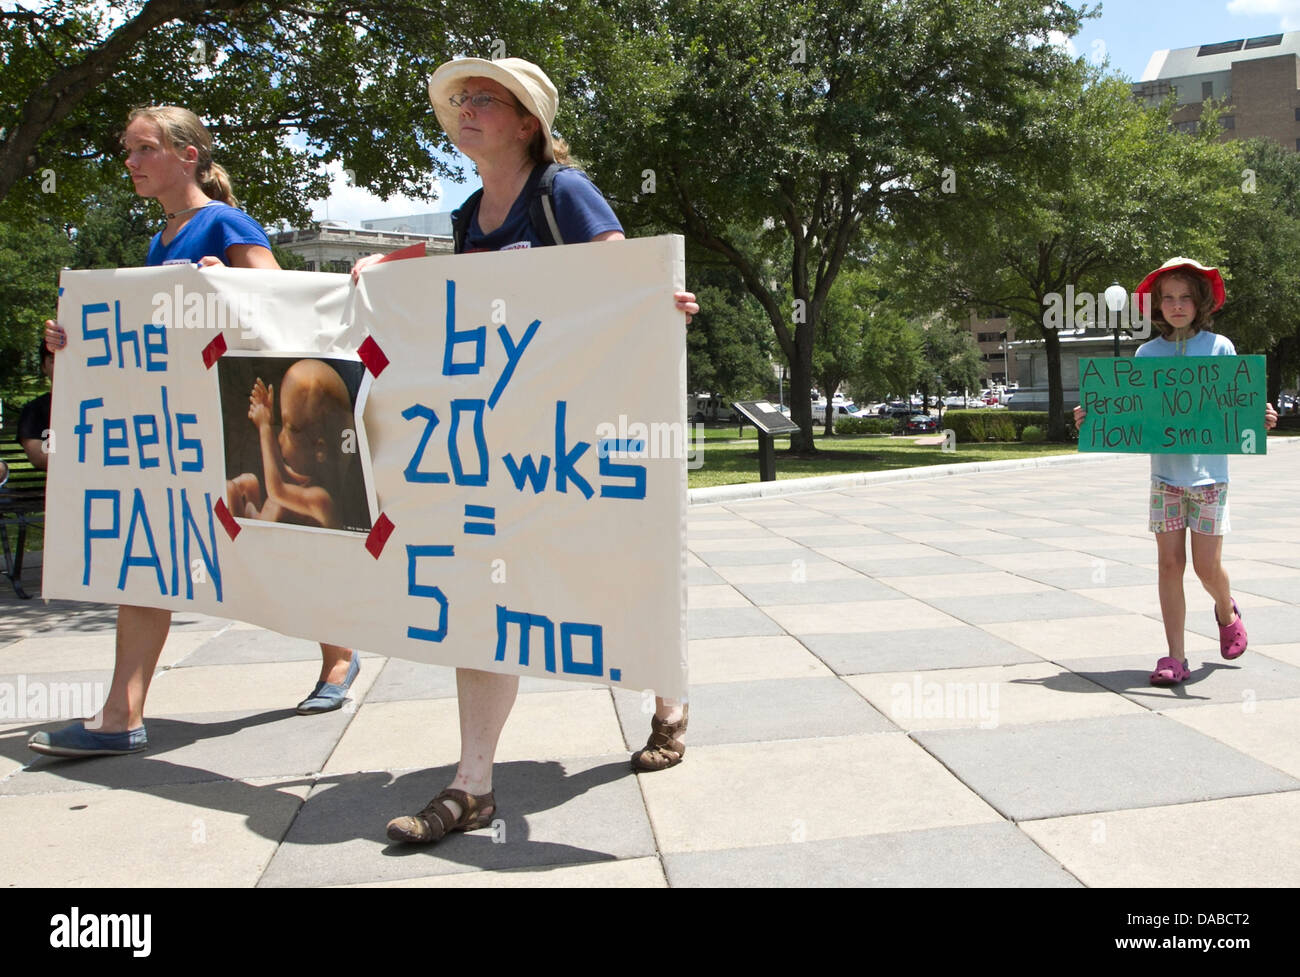 Gruppi di religiosi cittadini partecipare, rally e protestare contro la considerazione della nuova legge al Texas legislatura su aborti Foto Stock